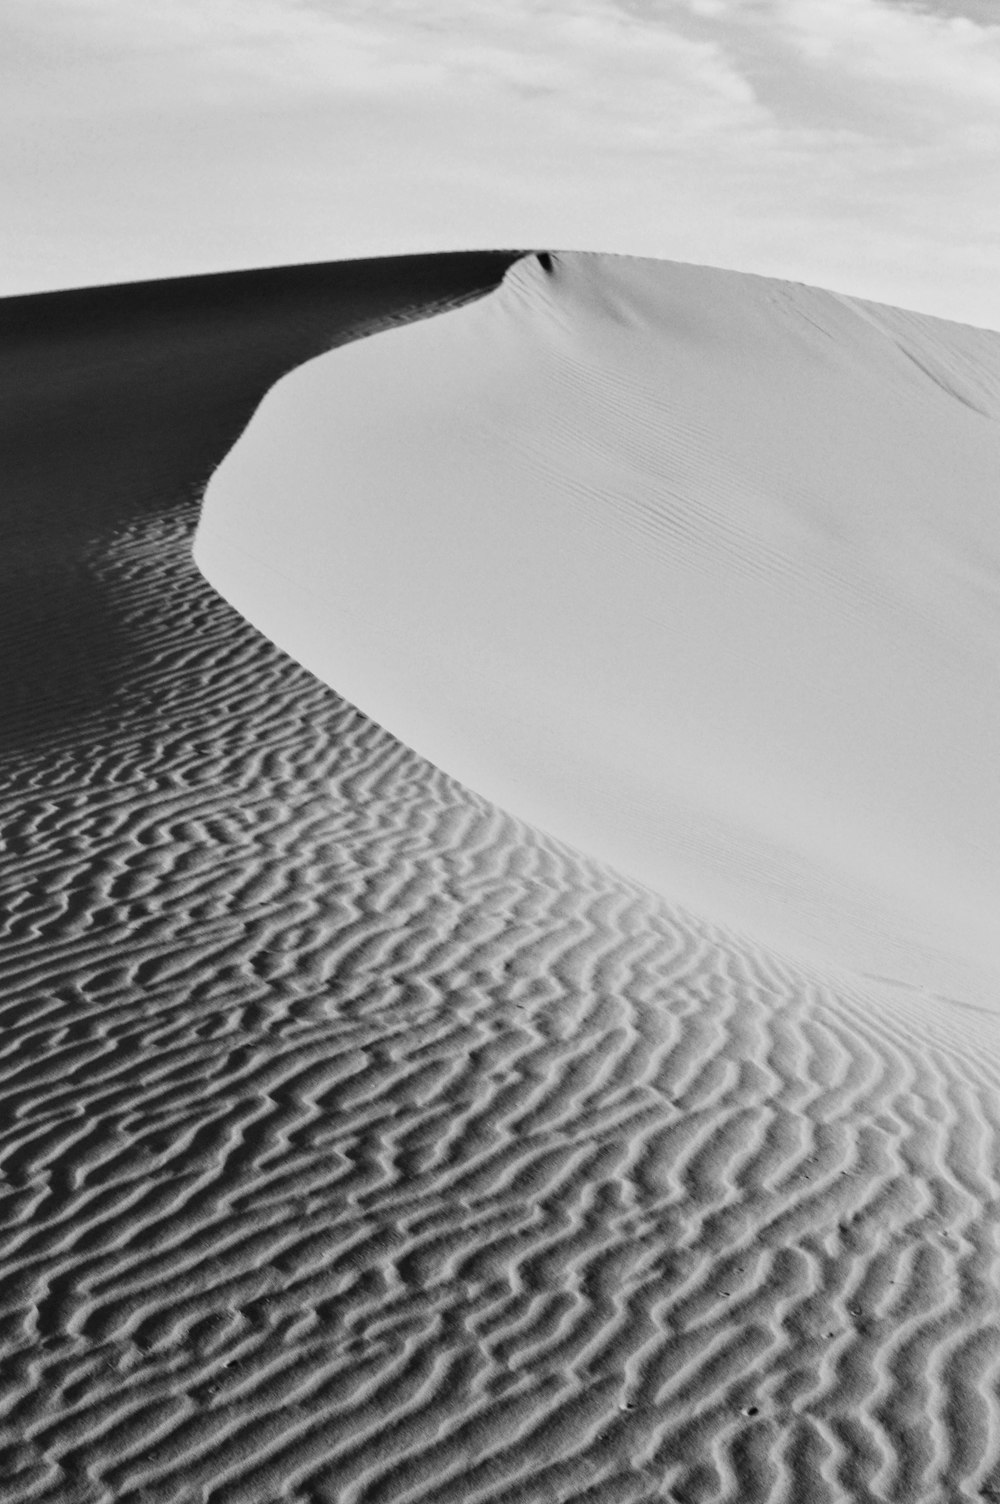 white sand on desert during daytime